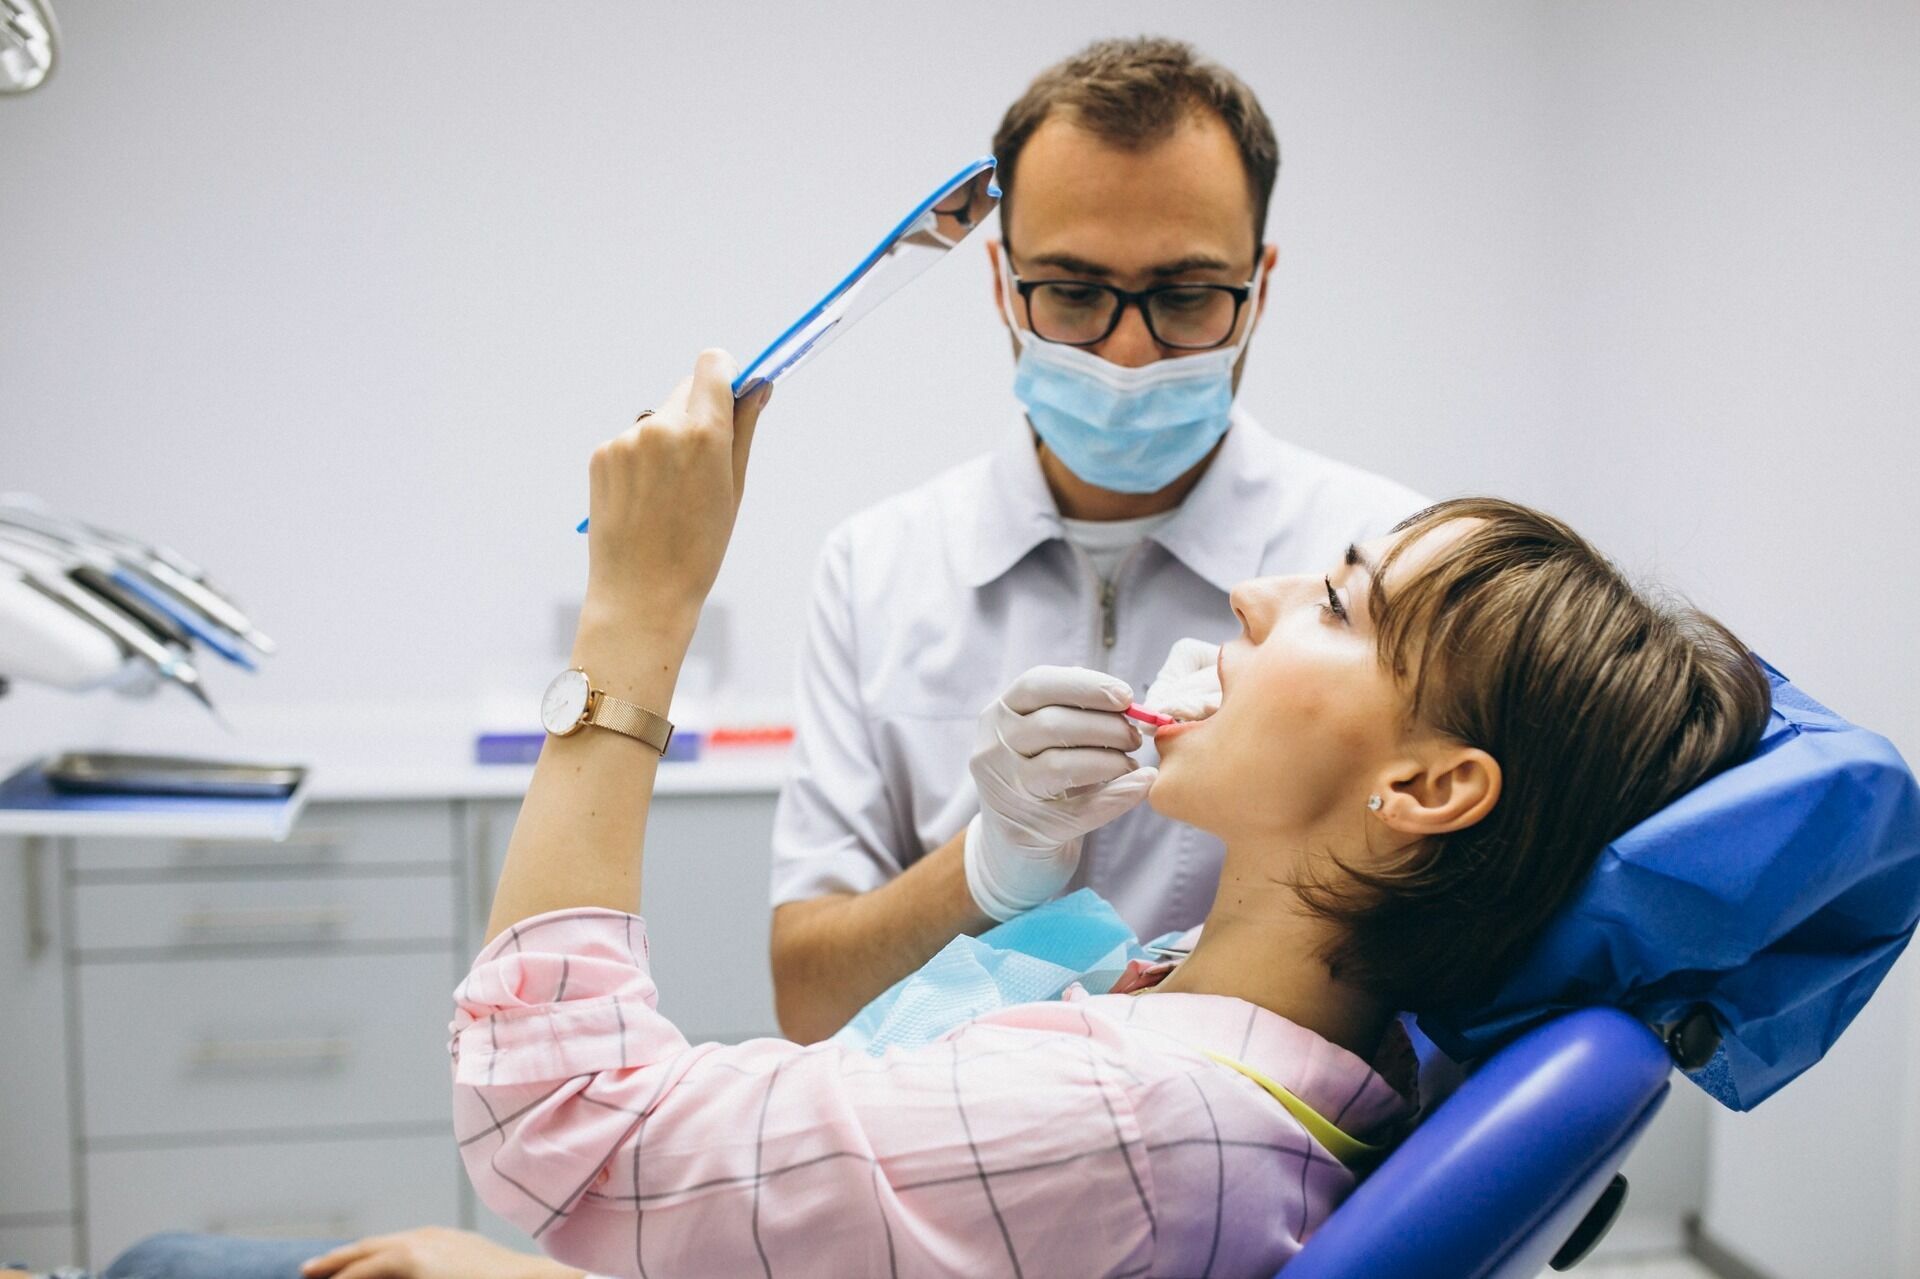 Откуда стоматологи будут брать материалы для работы?